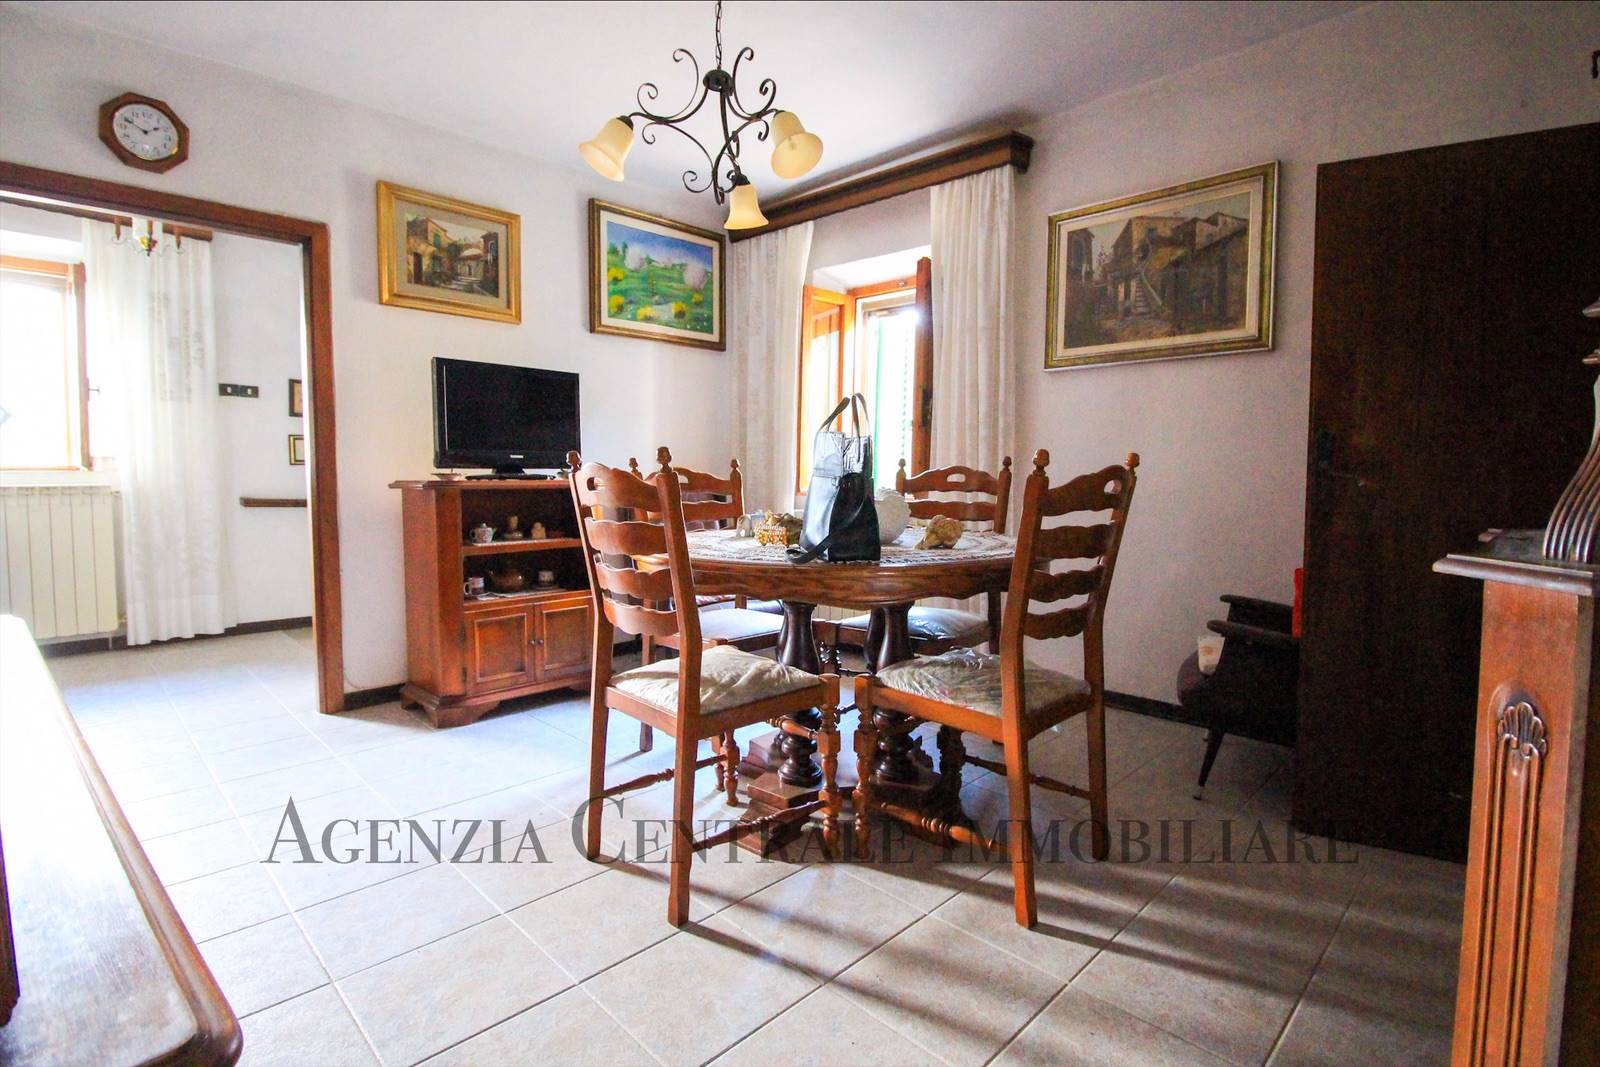 Appartamento in vendita a Campagnatico, 4 locali, prezzo € 85.000 | PortaleAgenzieImmobiliari.it